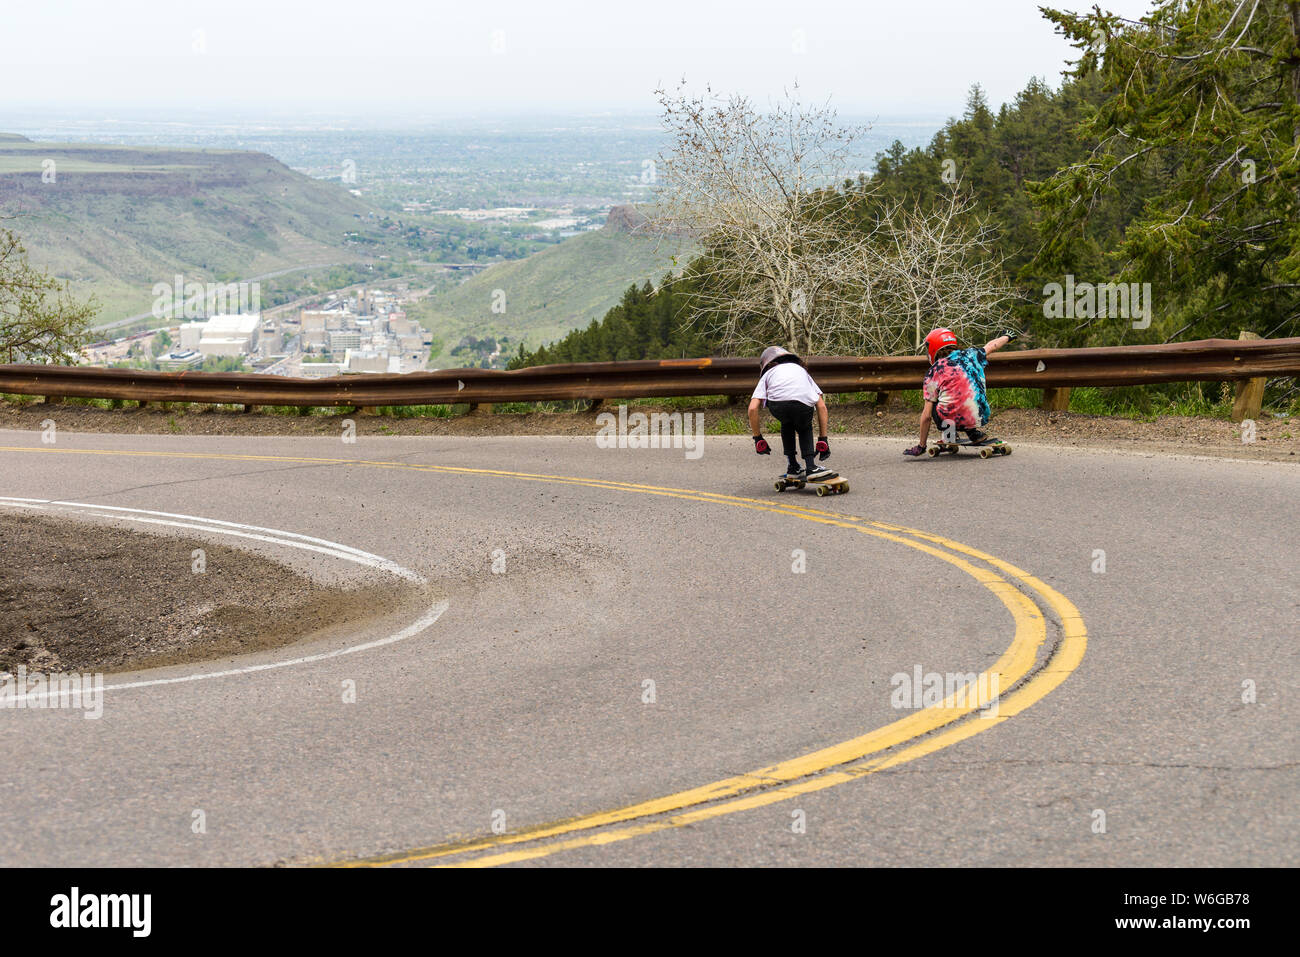 Longboarden den Berg hinunter Straße - Zwei Skateboarder, Kreuzfahrt eine steile und kurvenreiche Bergstrasse in Lookout Mountain, Golden, CO, USA. Stockfoto